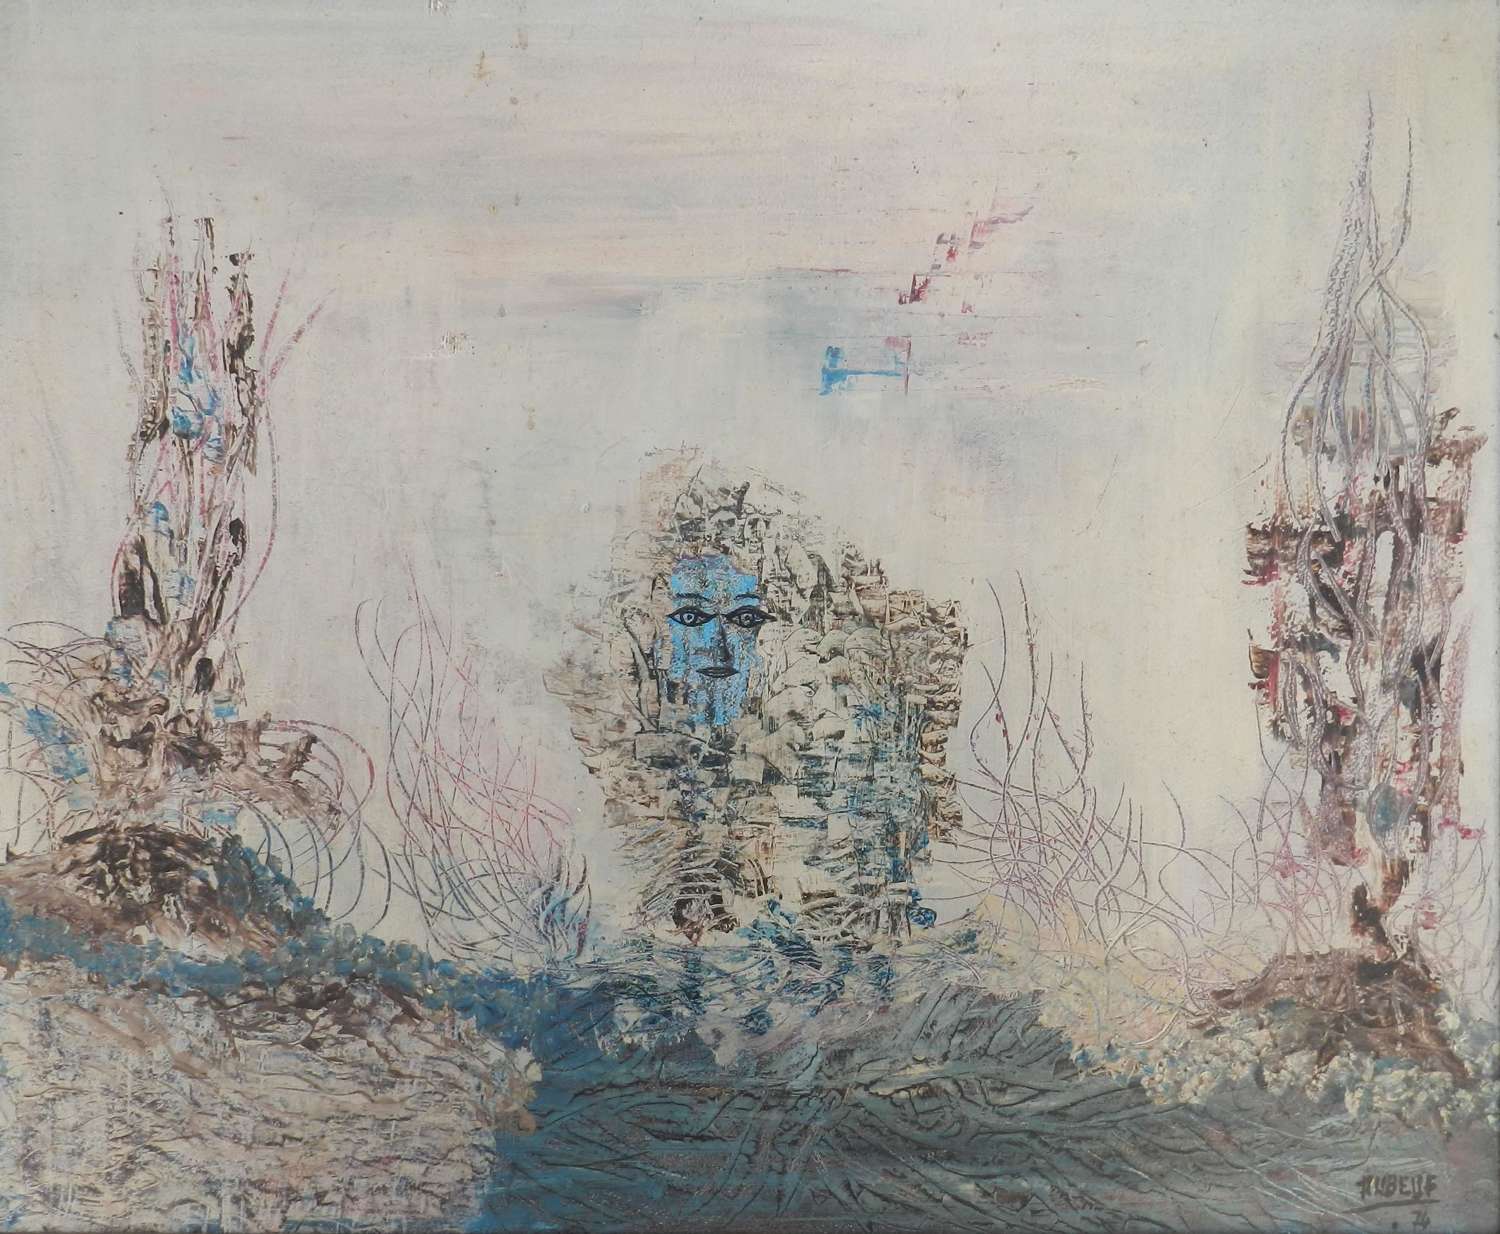 Aquarius by Aubeuf Oil Painting 1974